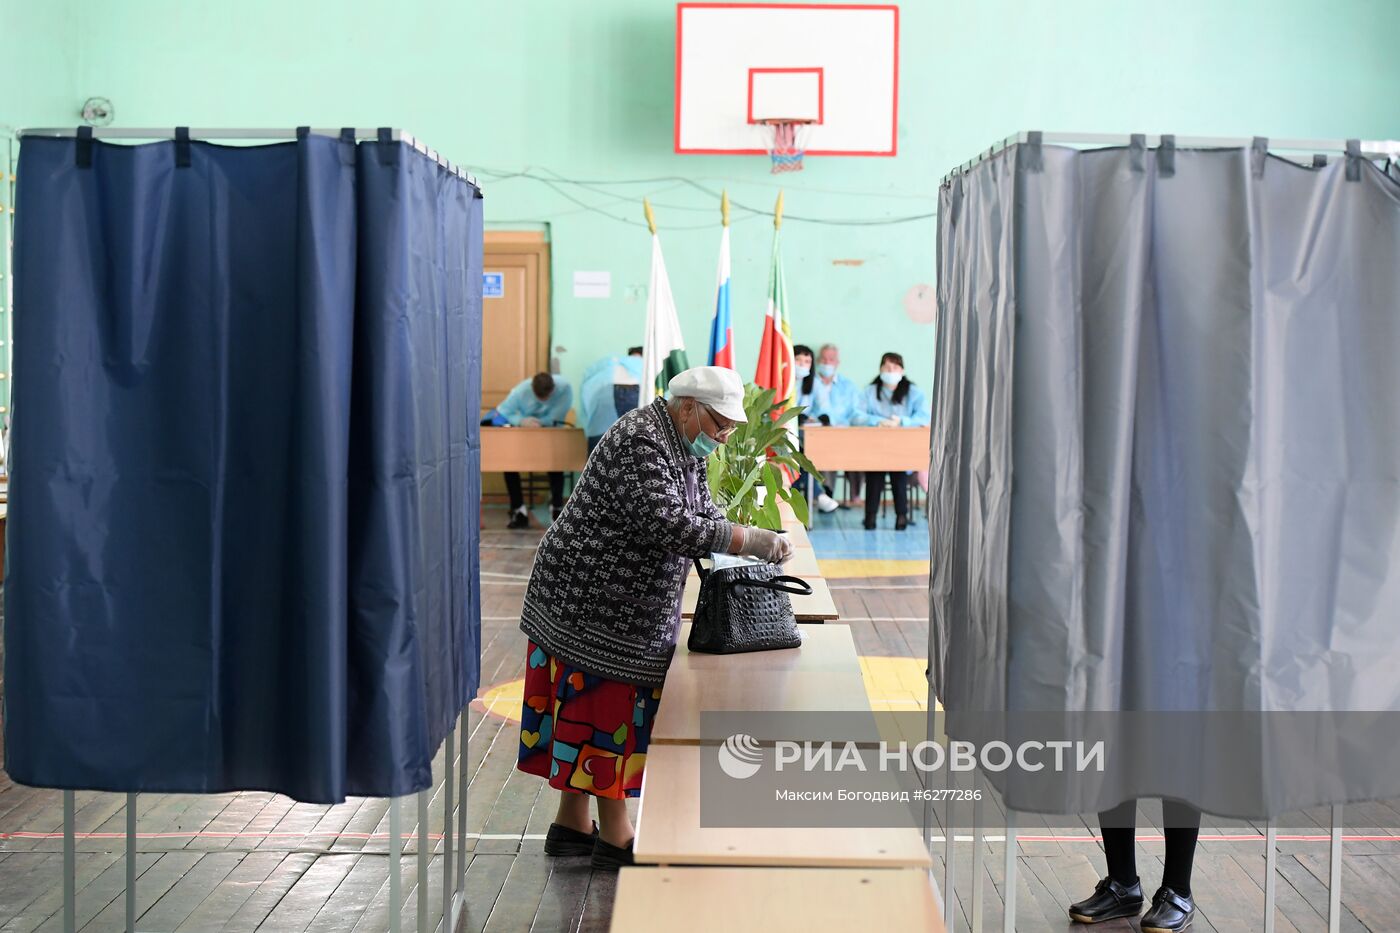 Голосование по внесению поправок в Конституцию РФ в регионах России